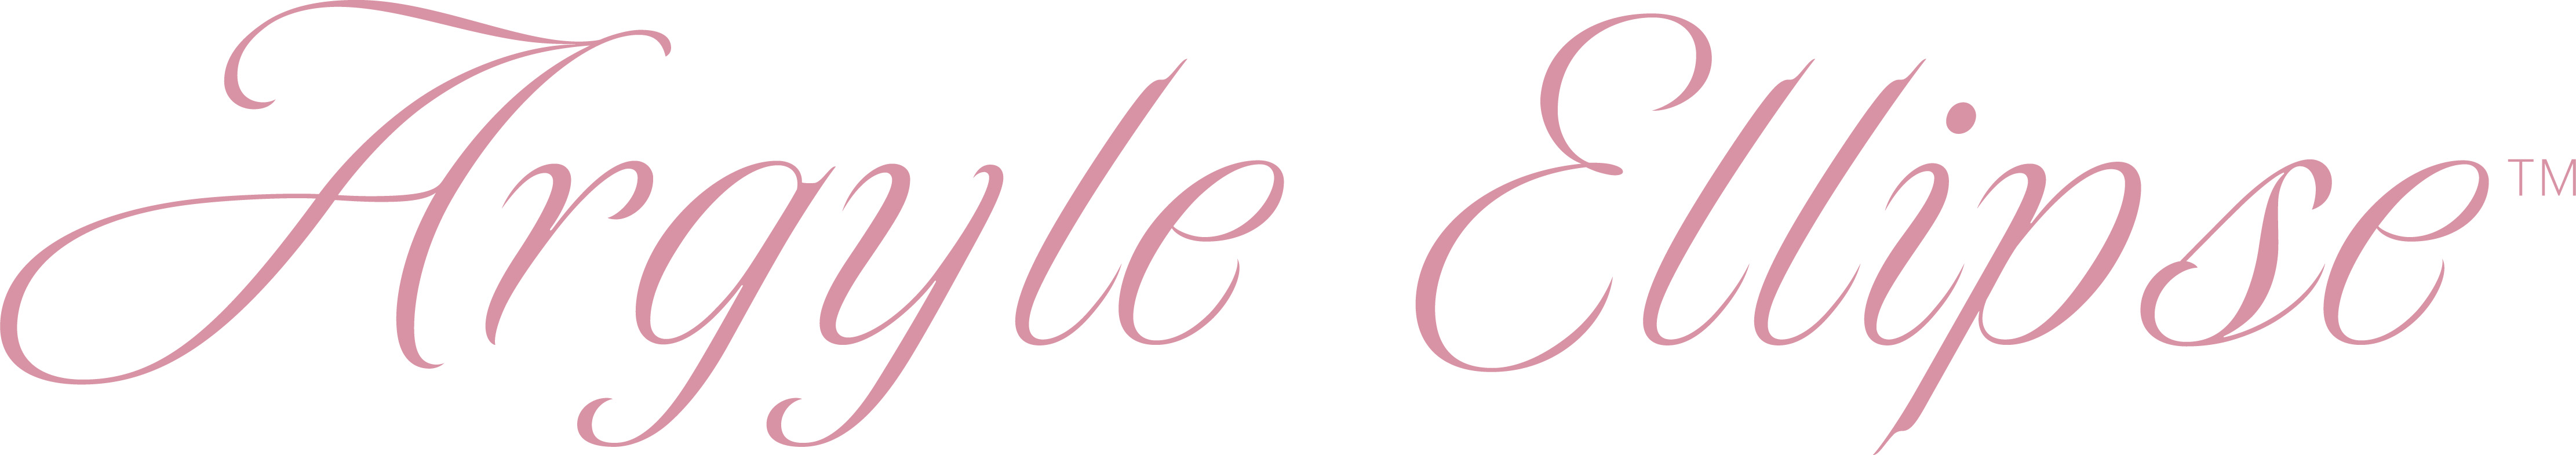 Argyle Ellipse Logo_Pink.jpg